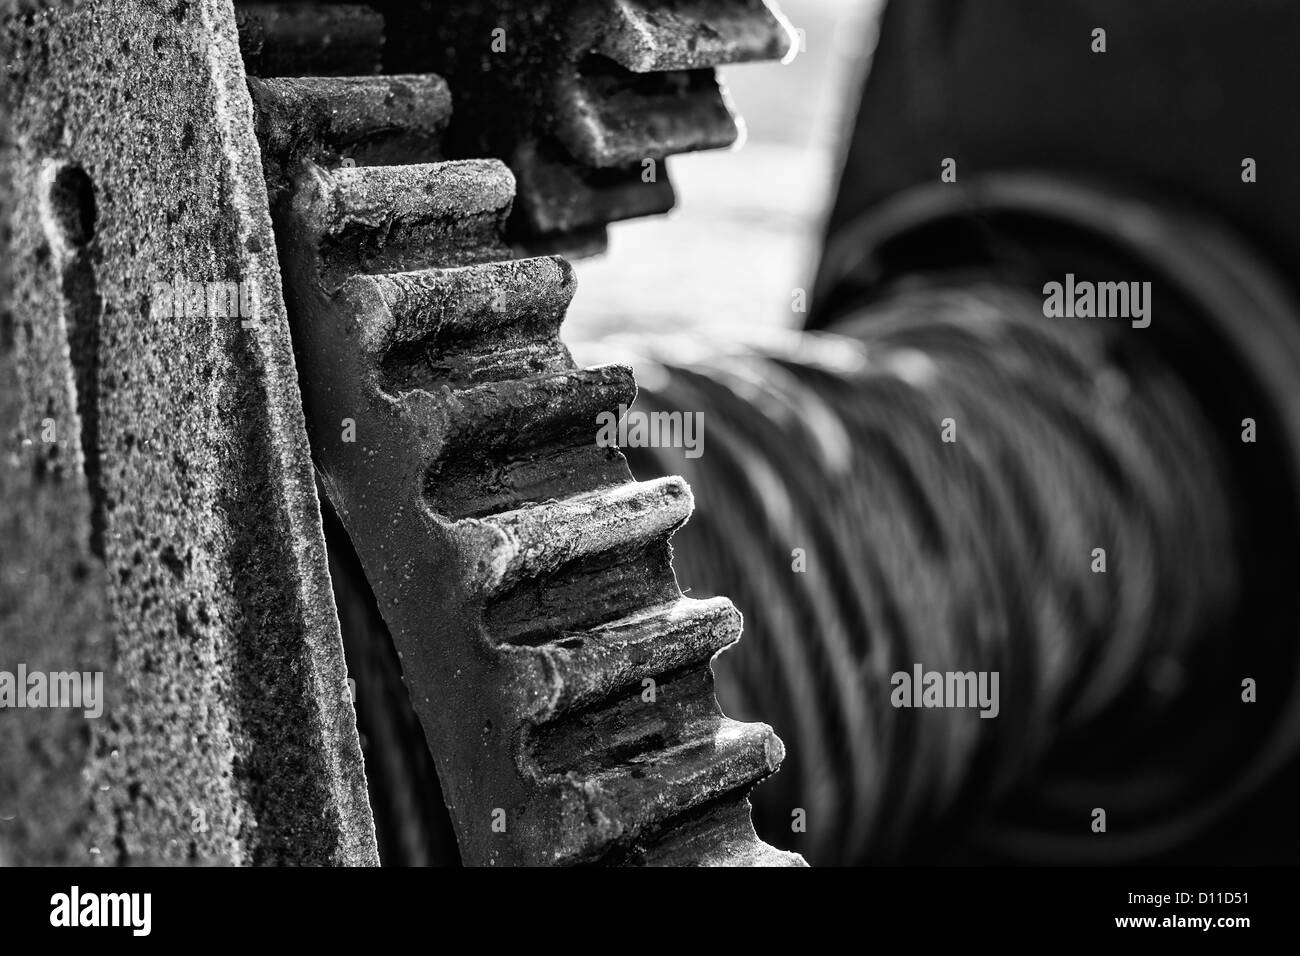 Draht ziehen Schwarzweiß-Stockfotos und -bilder - Alamy